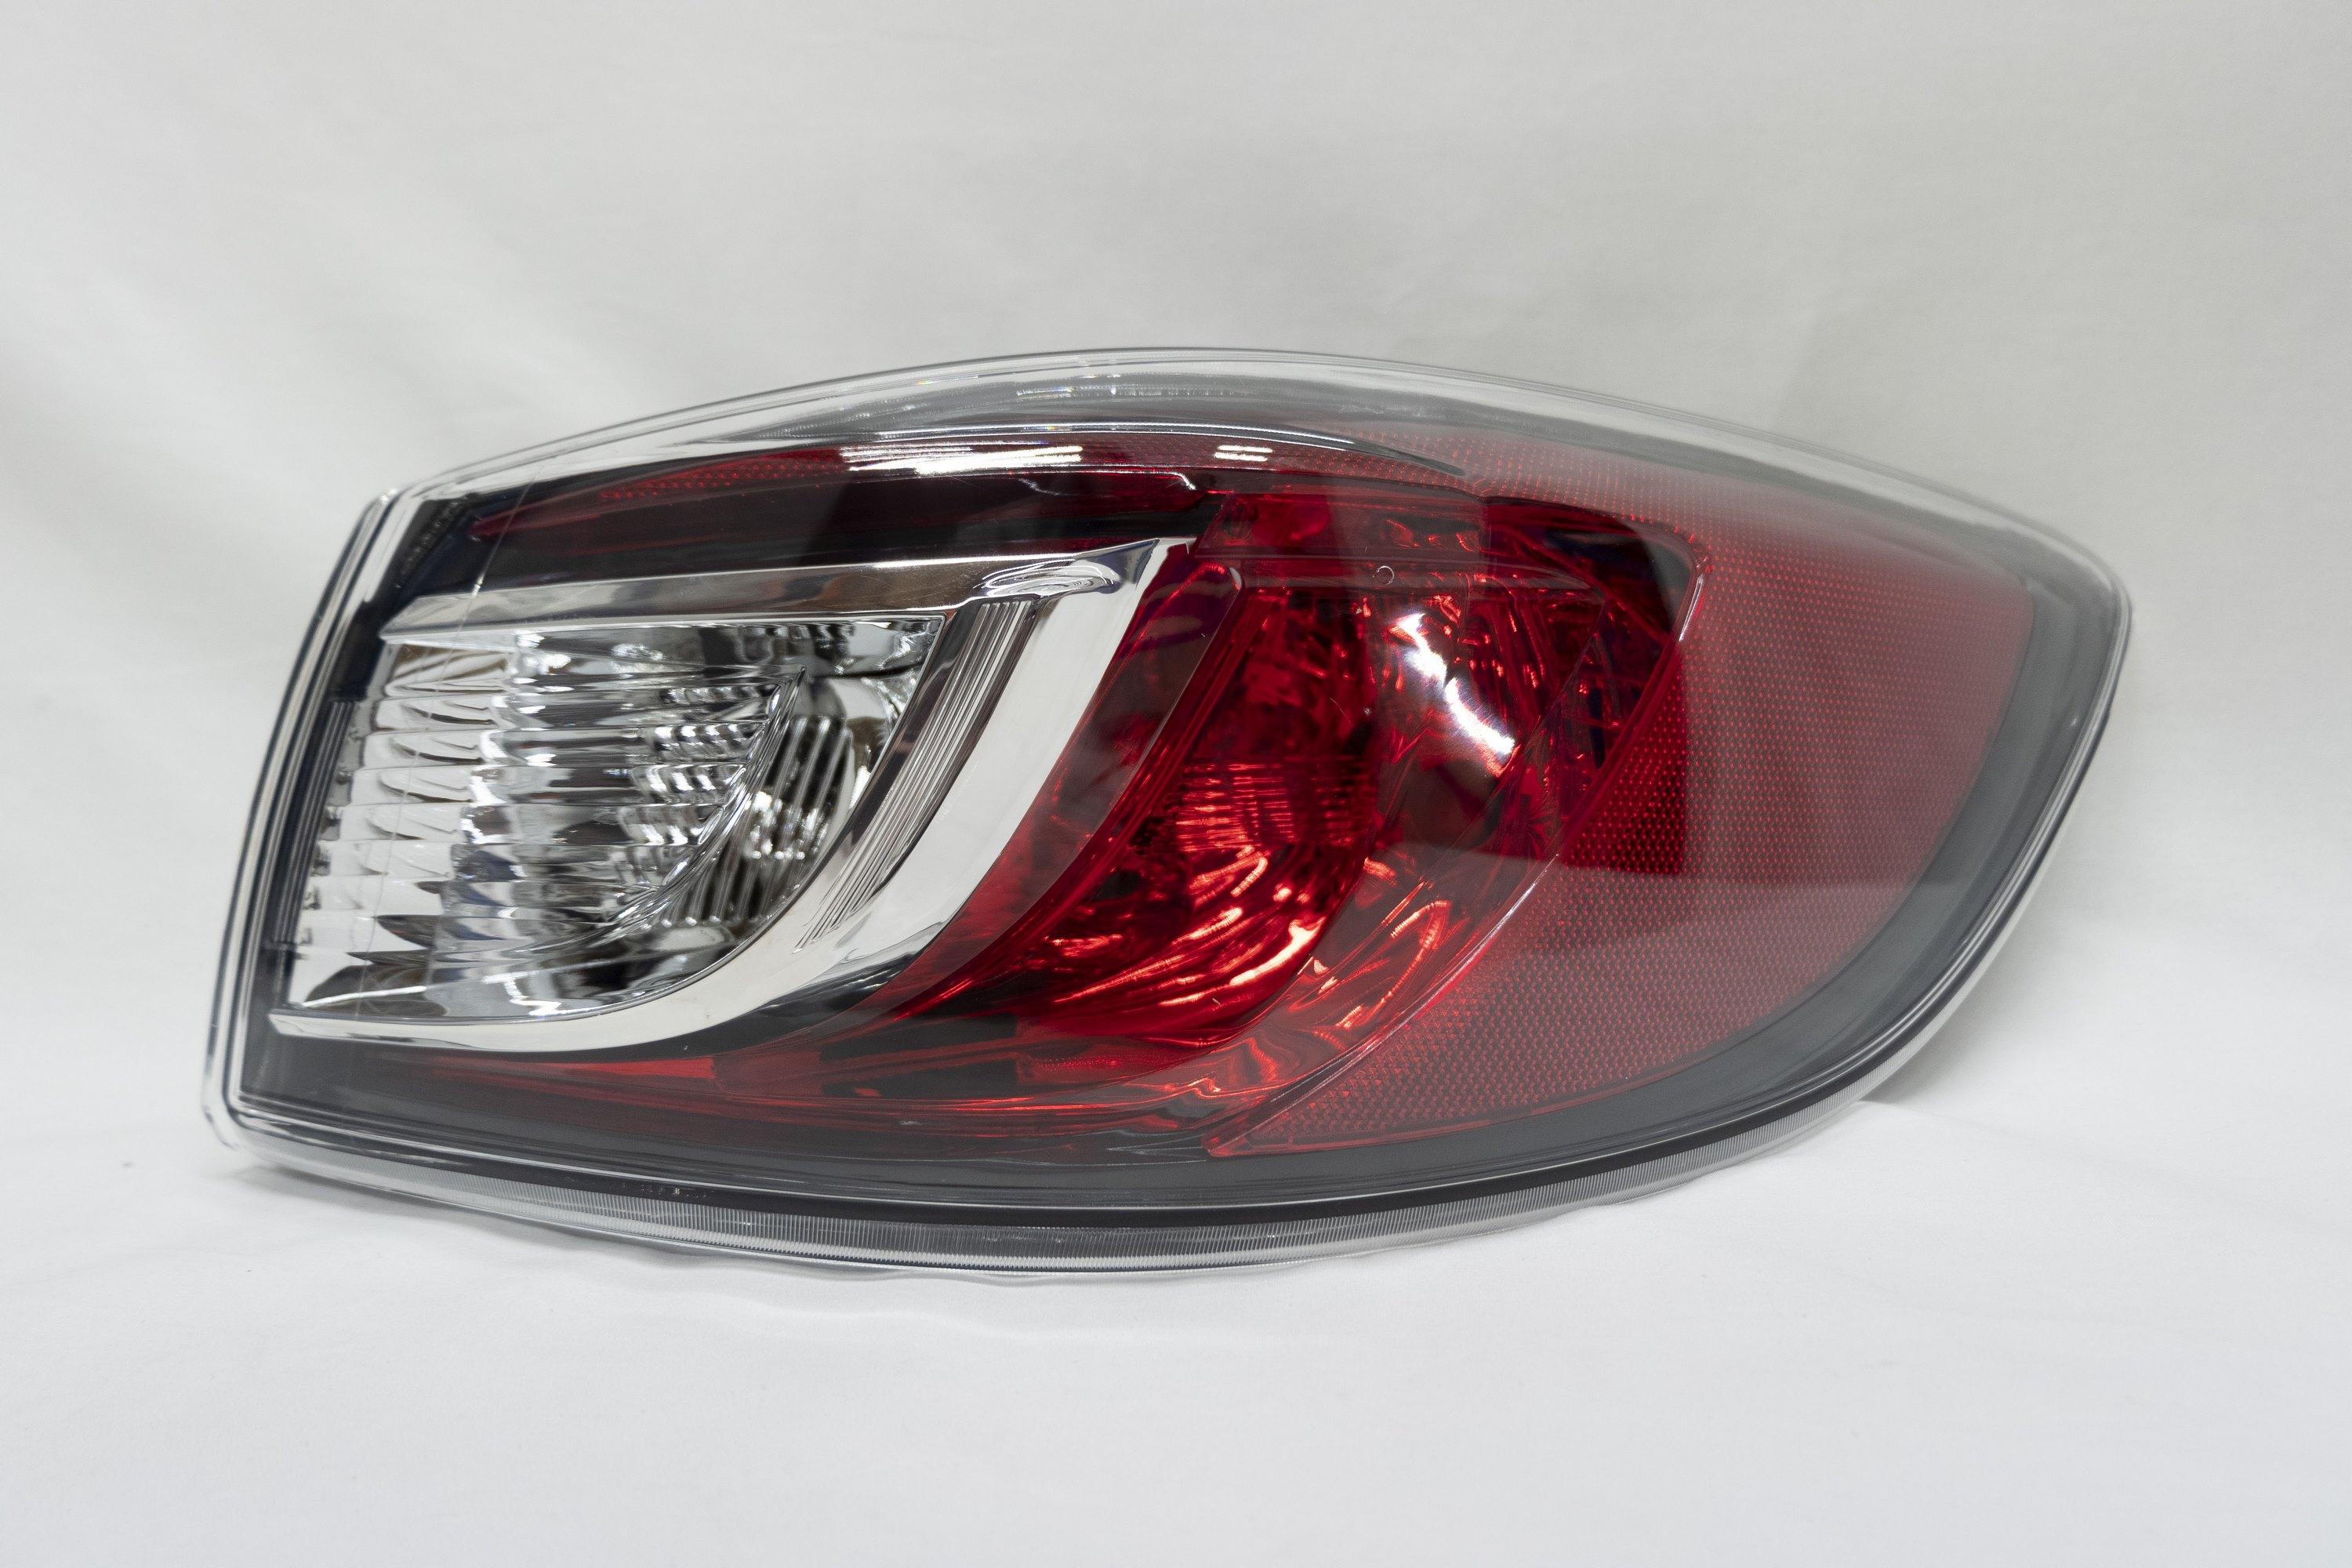 Фонарь правый внешний, Mazda, 3, 2 BL (2009-2013)